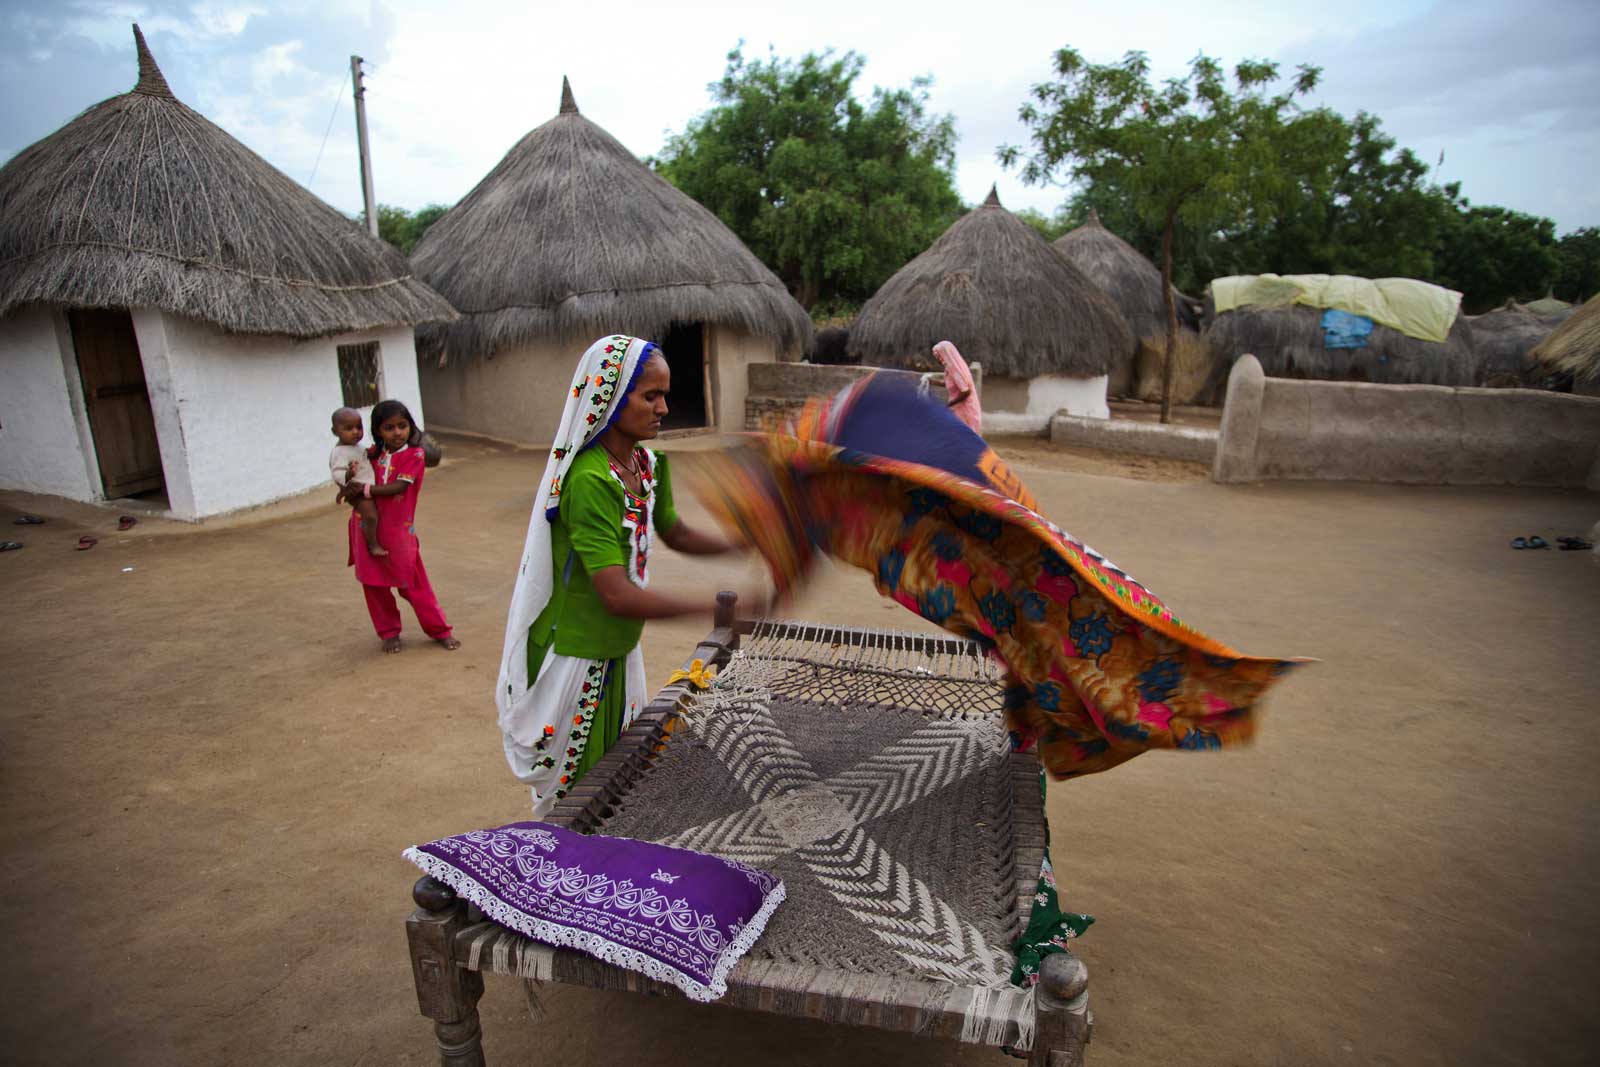   Après le petit déjeuner, Bai, âgée de 30 ans, accomplit les tâches ménagères quotidiennes. À l’instar d’autres femmes agents de santé partout au Pakistan, Bai a suivi une formation de six mois pour exercer cet emploi. Comme elle a accompli l’intégralité de son cursus scolaire, elle est également habilitée à administrer des vaccins.